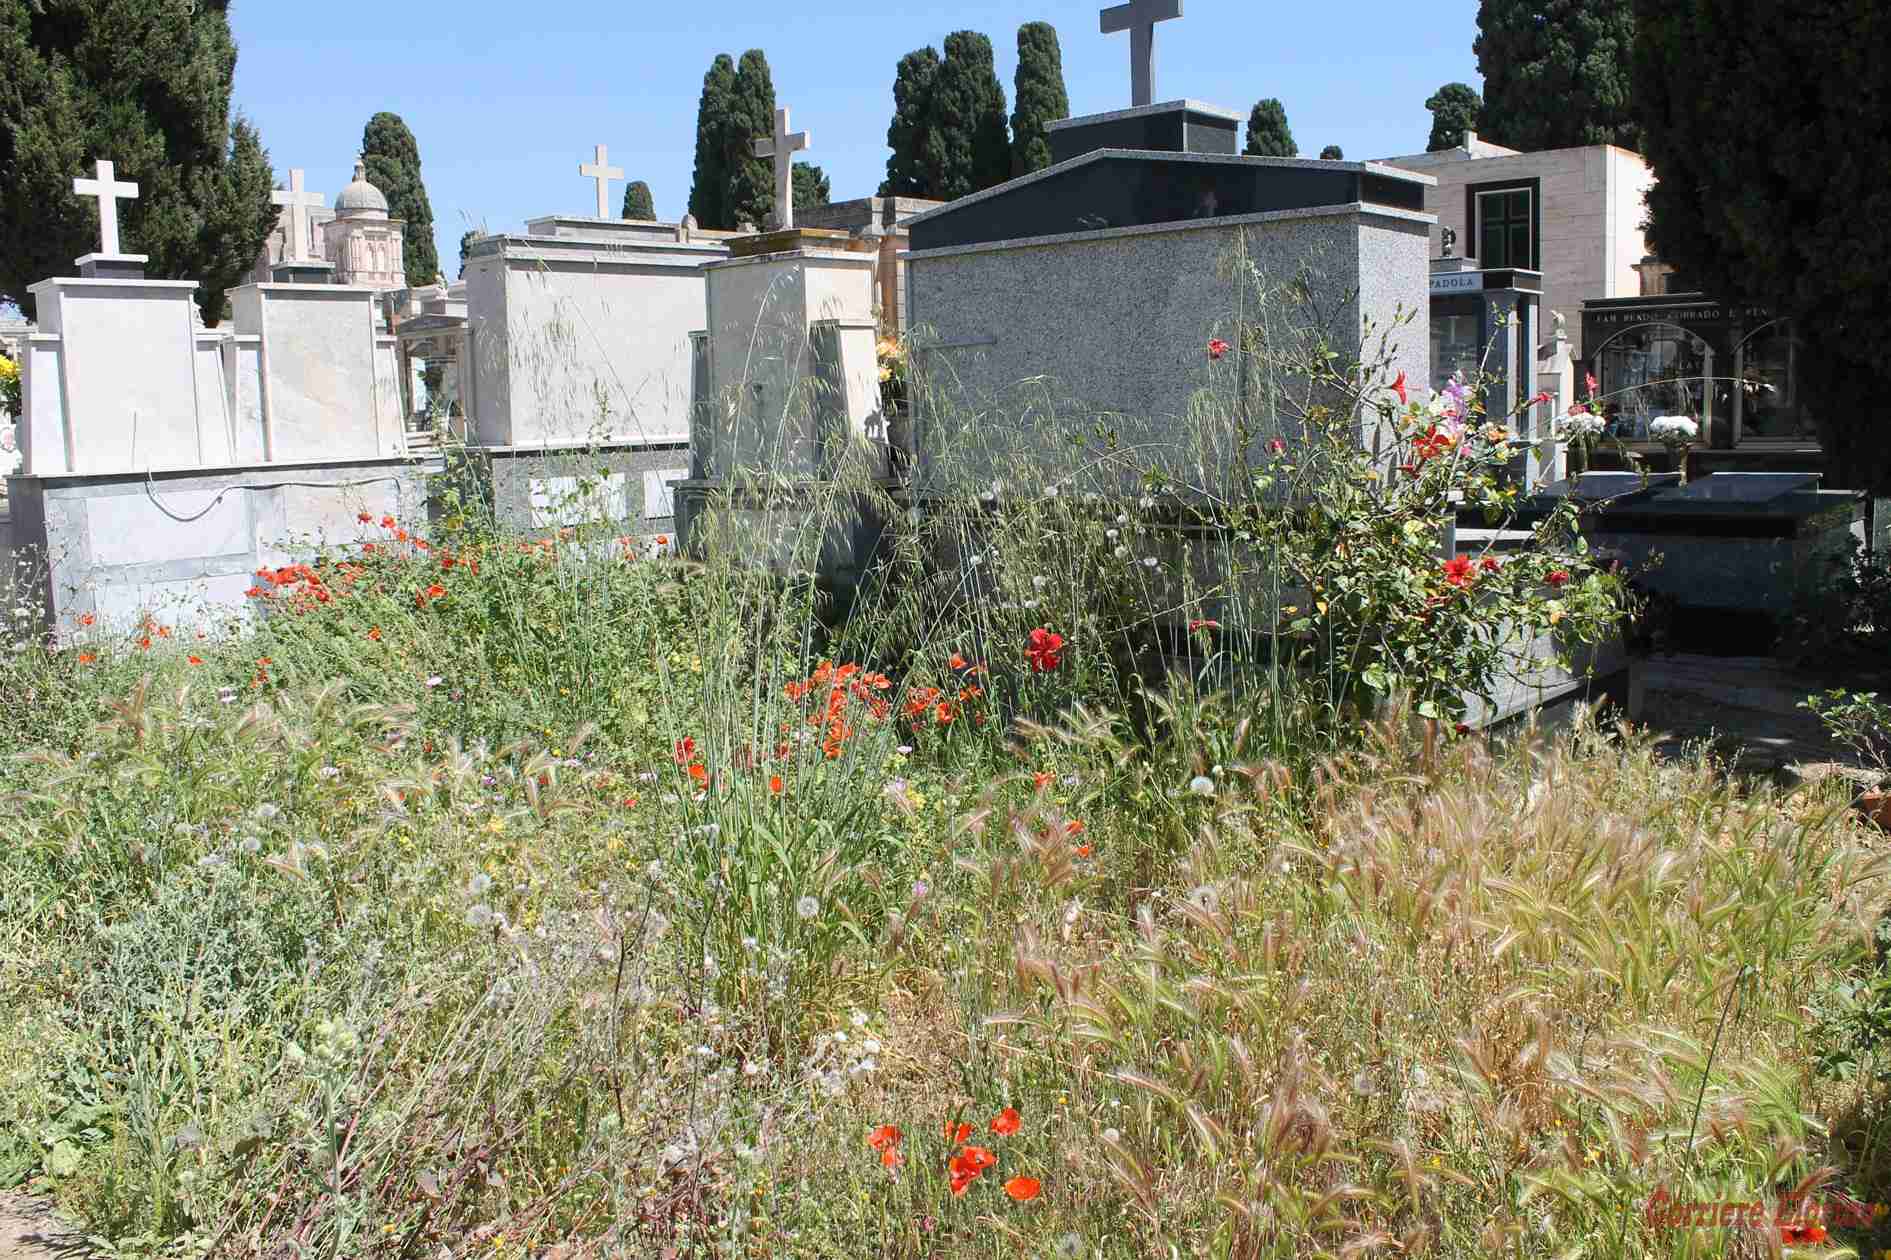 Cimitero comunale con erba alta due metri: perché arrivare a questo punto?